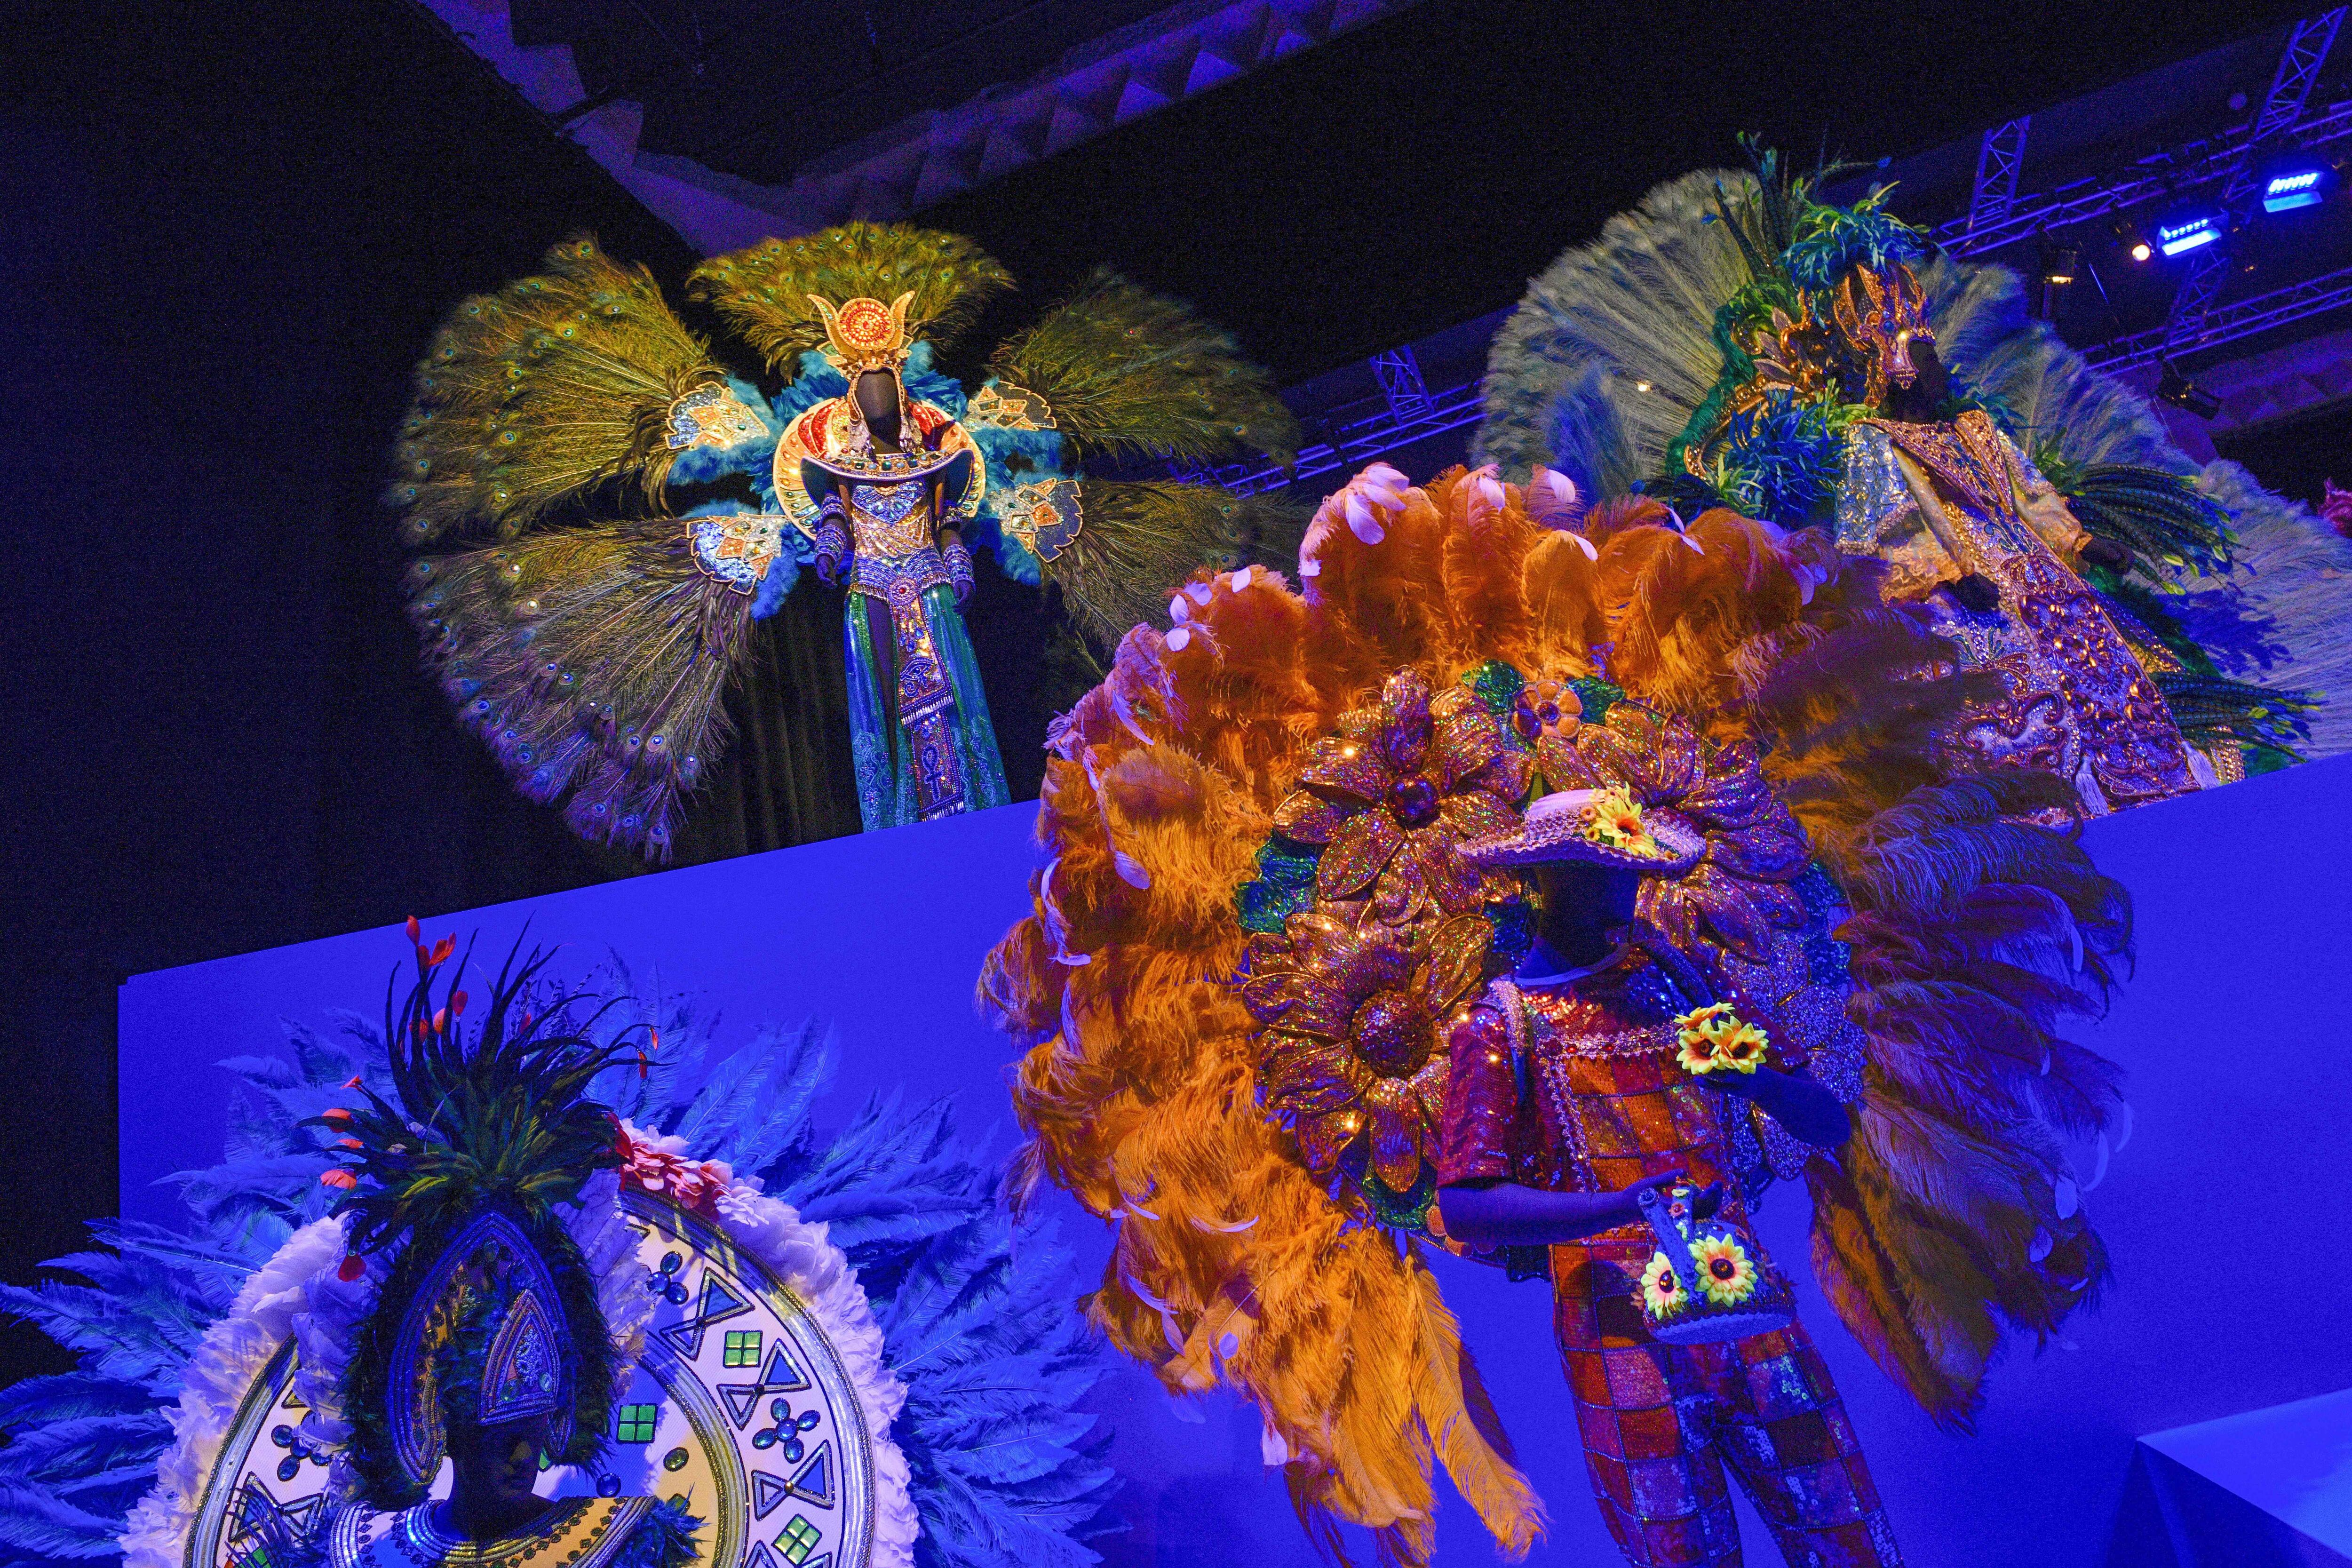 Fantasias do Carnaval carioca que serão expostas em um museu em Moulins, França.